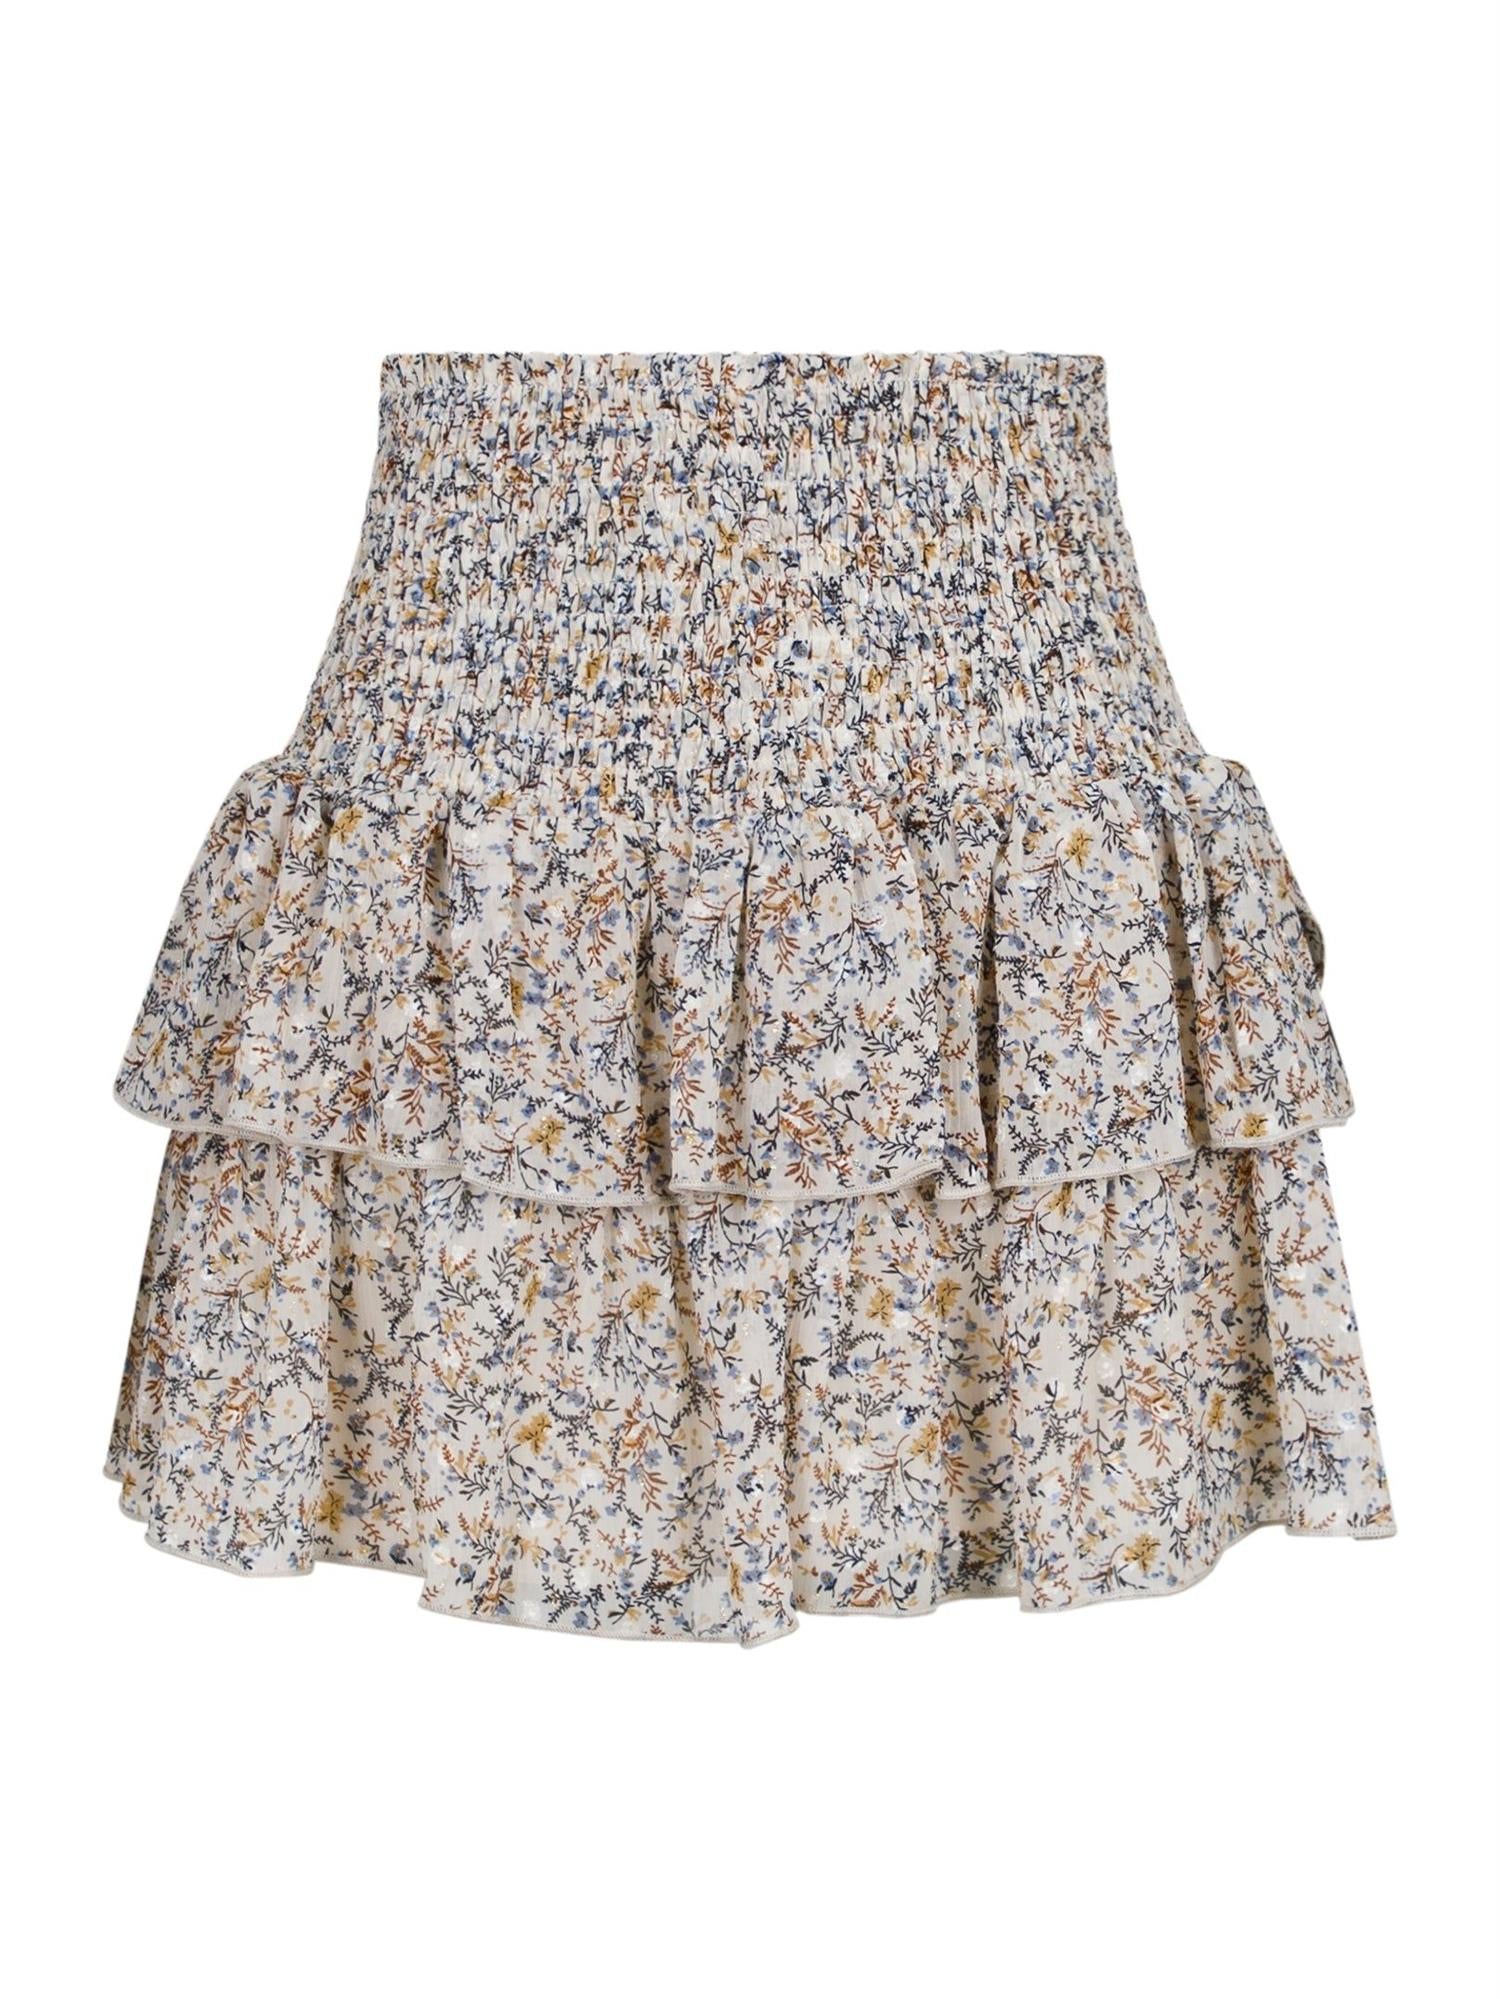 Carin Bohemian Skirt